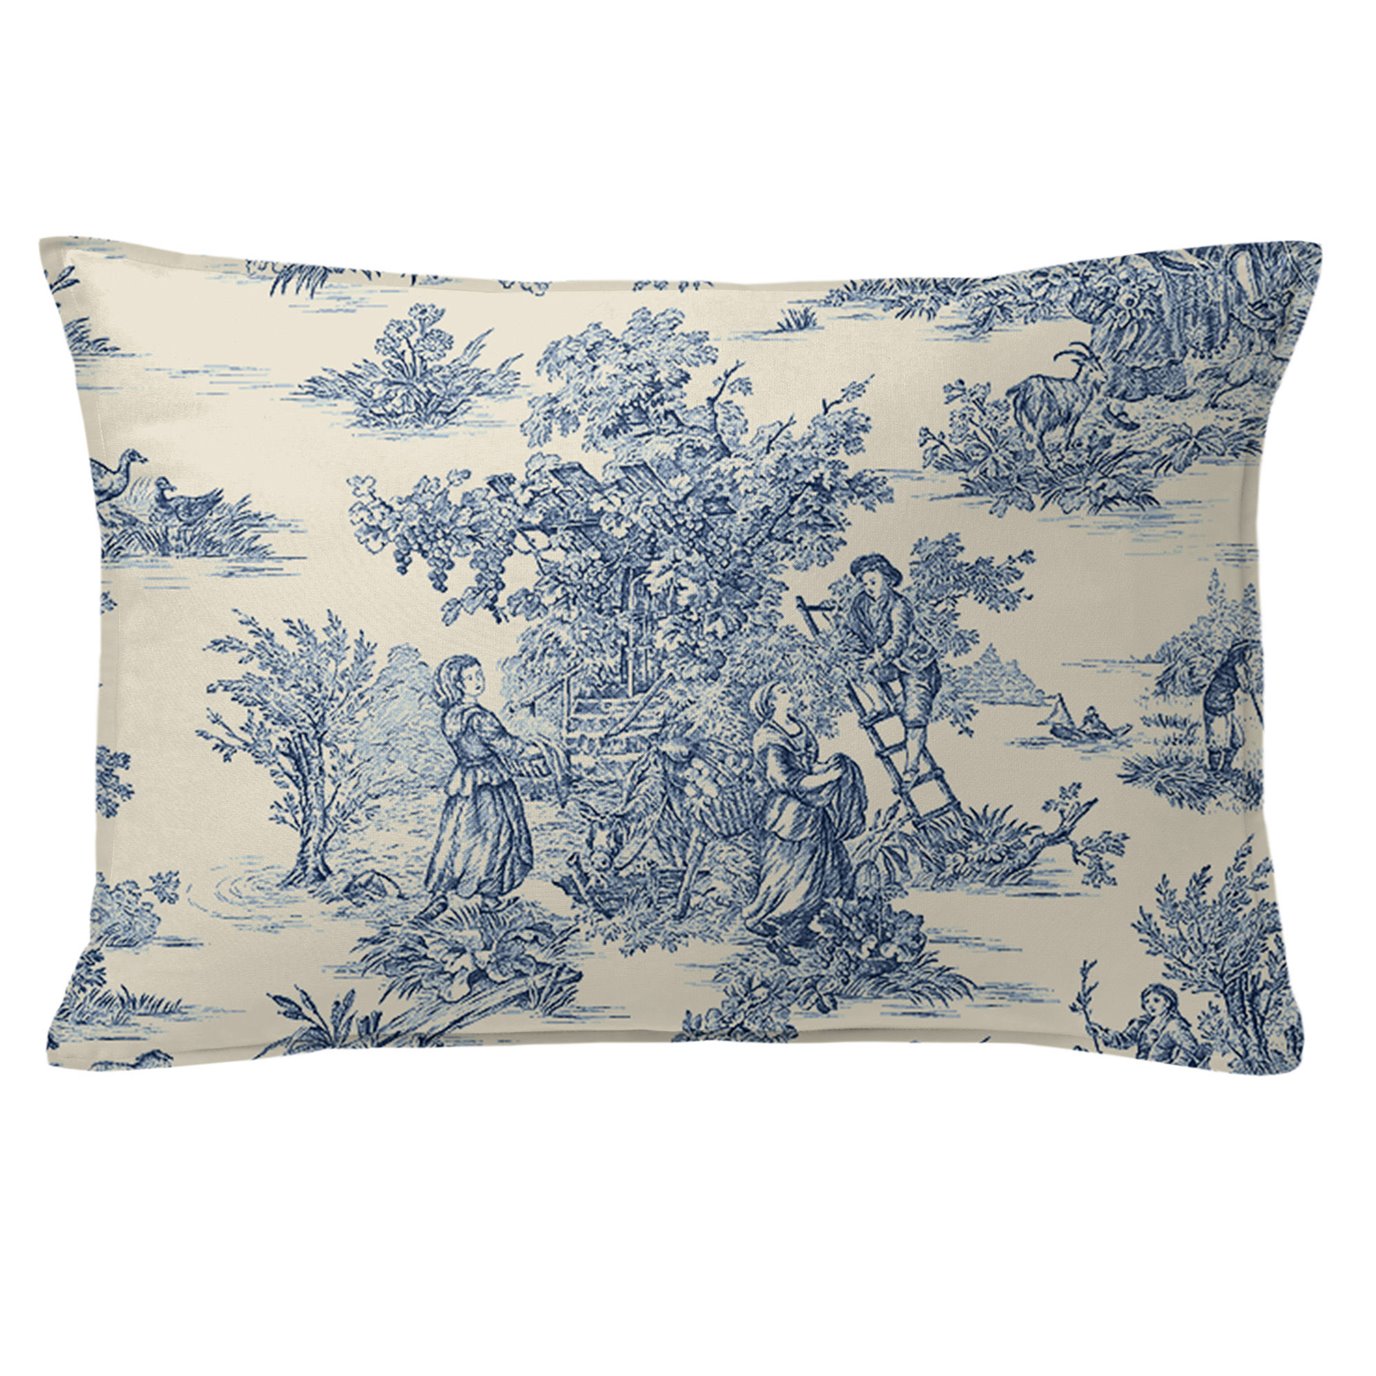 Bouclair Blue Decorative Pillow - Size 14"x20" Rectangle